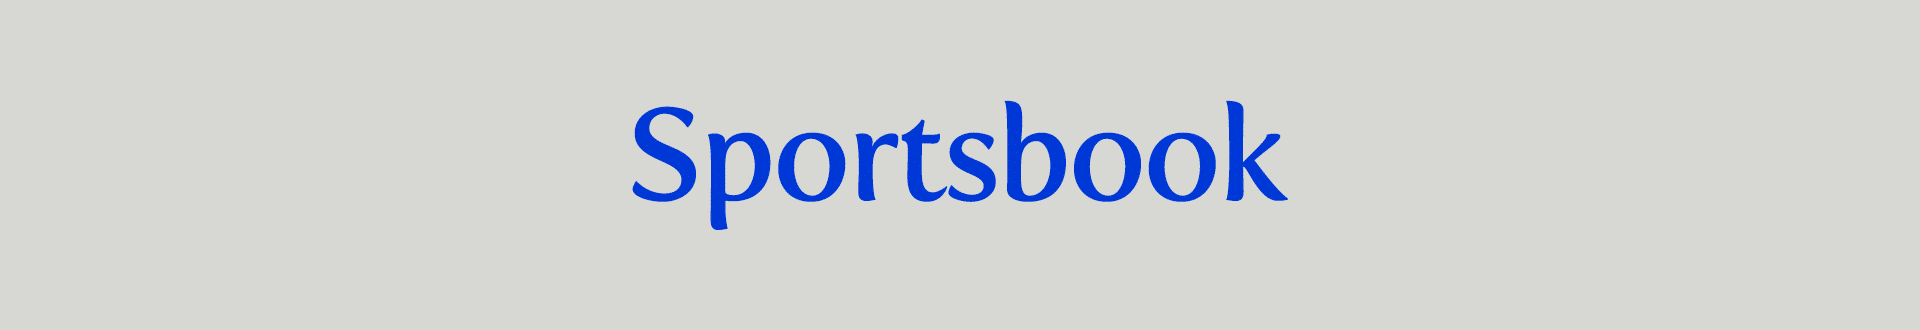 banner_nosotros_tsportsbook